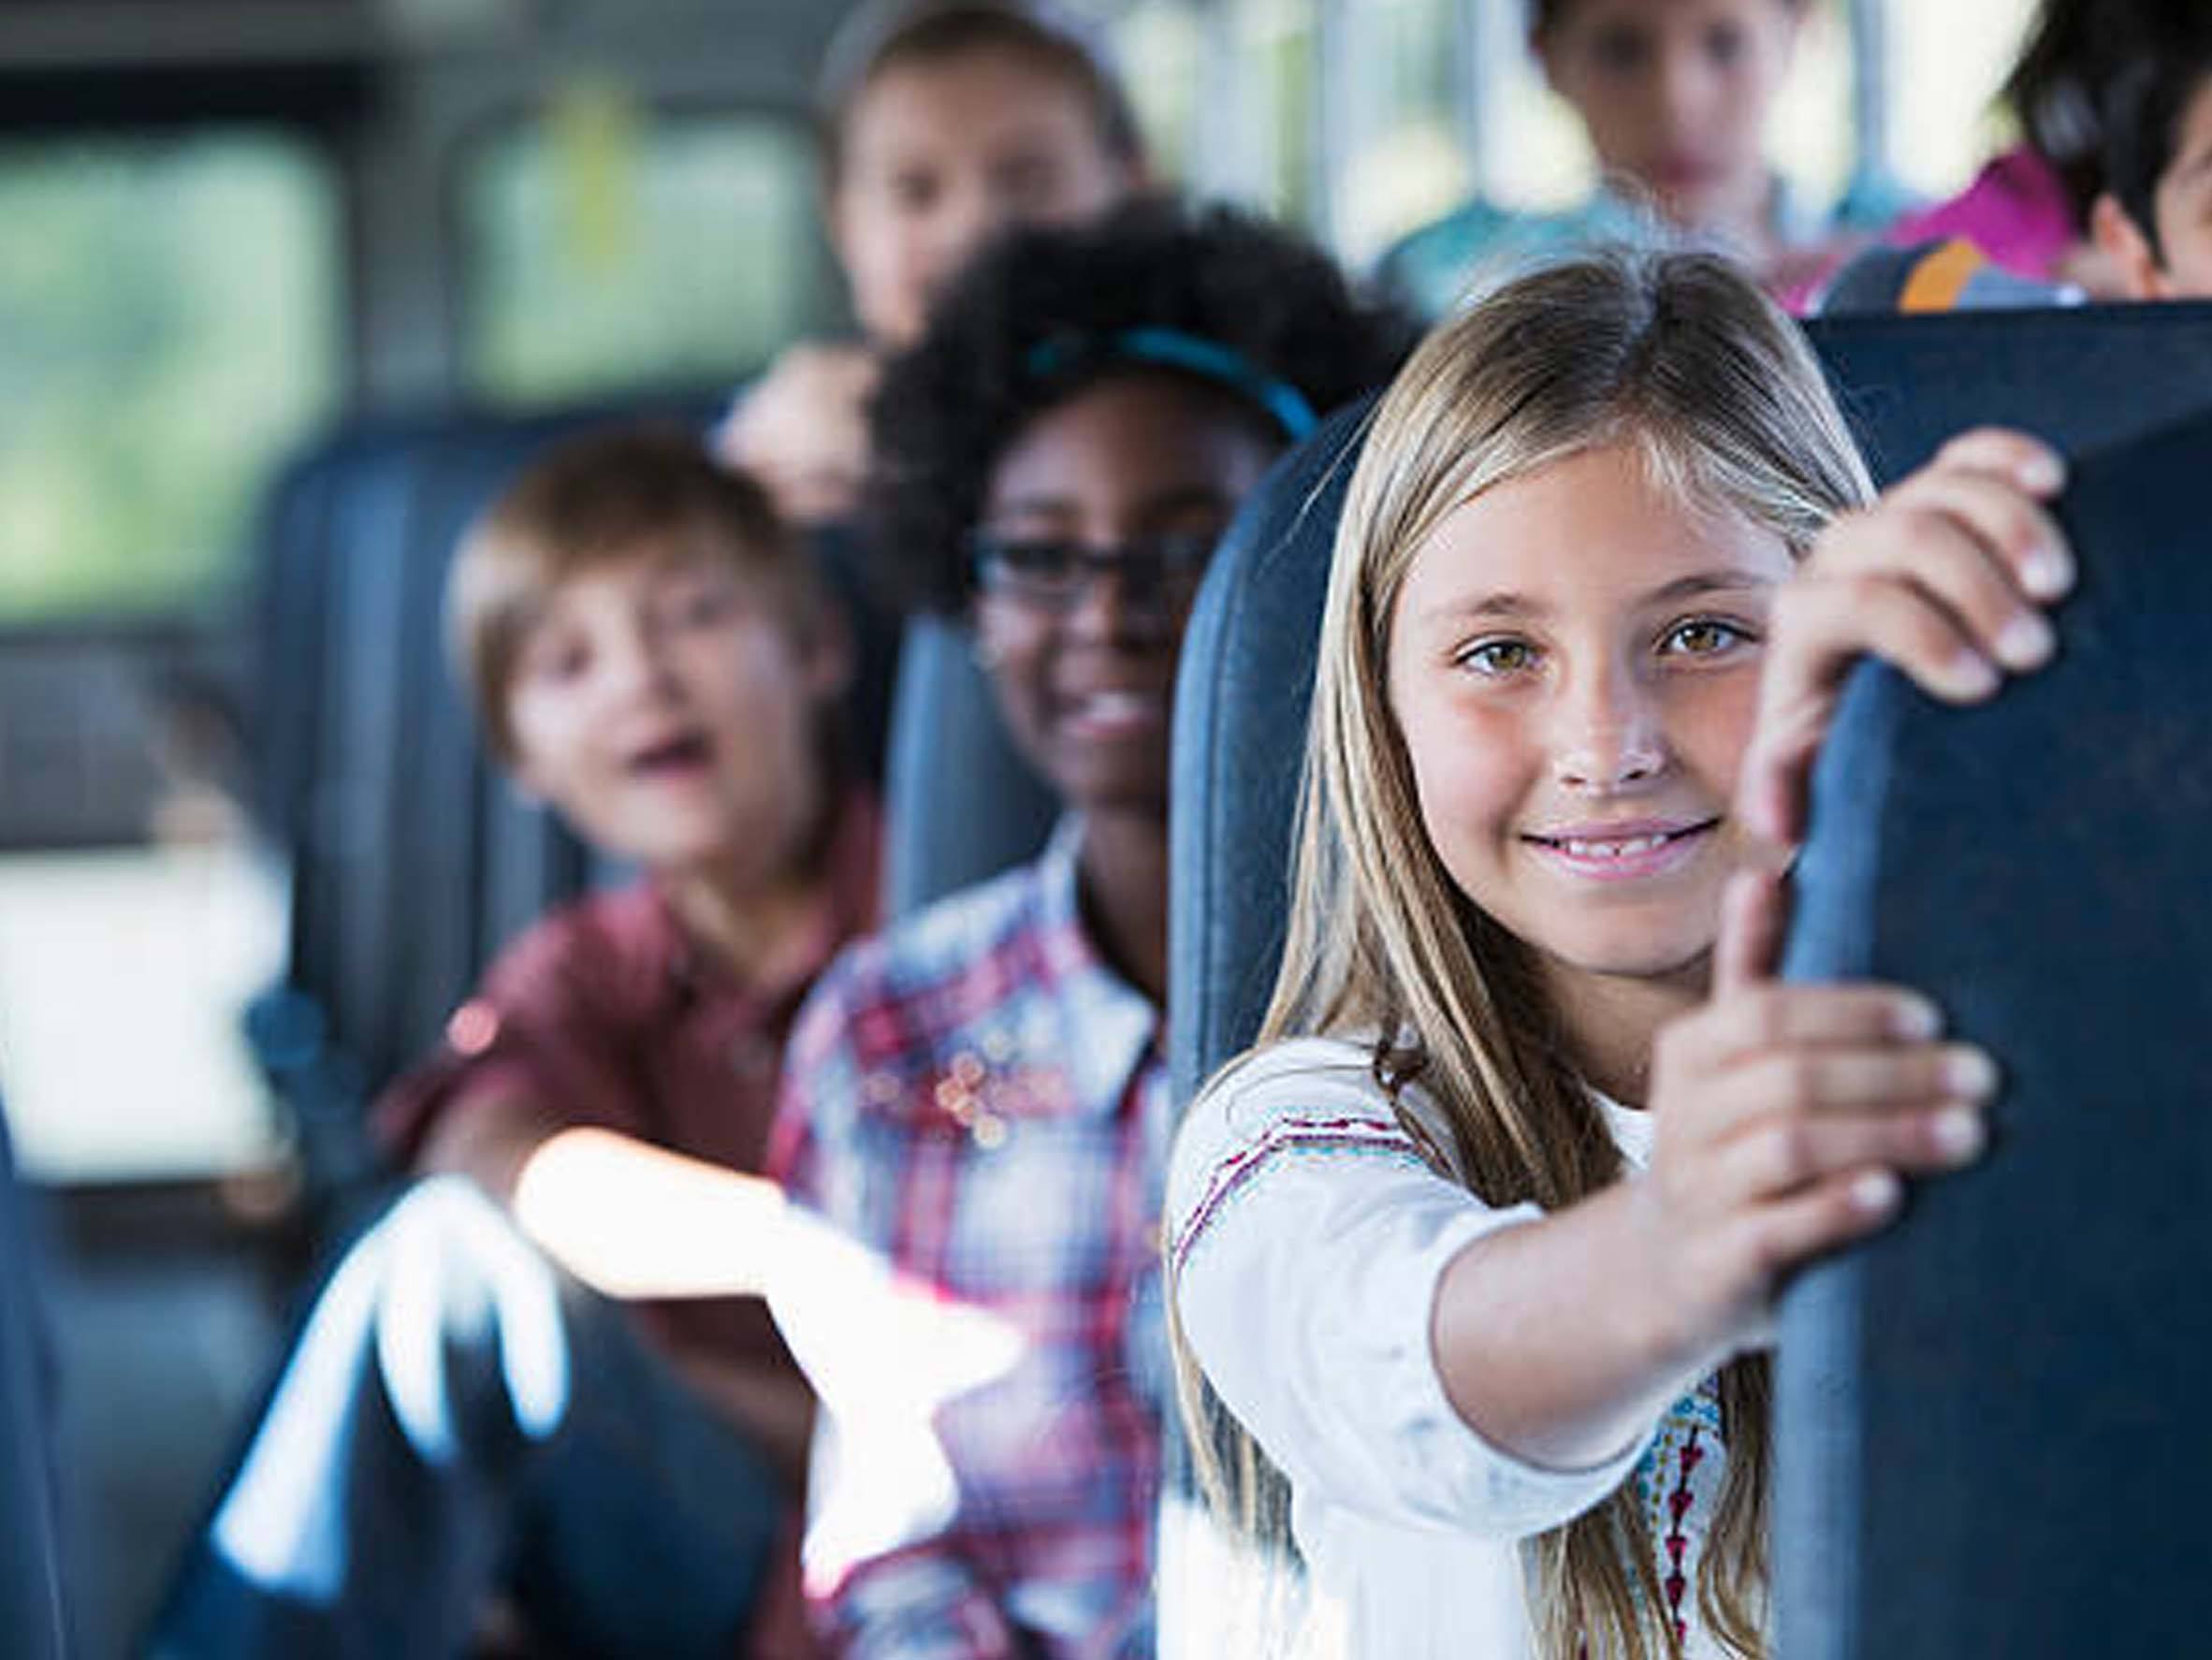 Alquiler de autobuses para transporte escolar, Alquiler de autobus en Asturias, Alquiler de autobuses